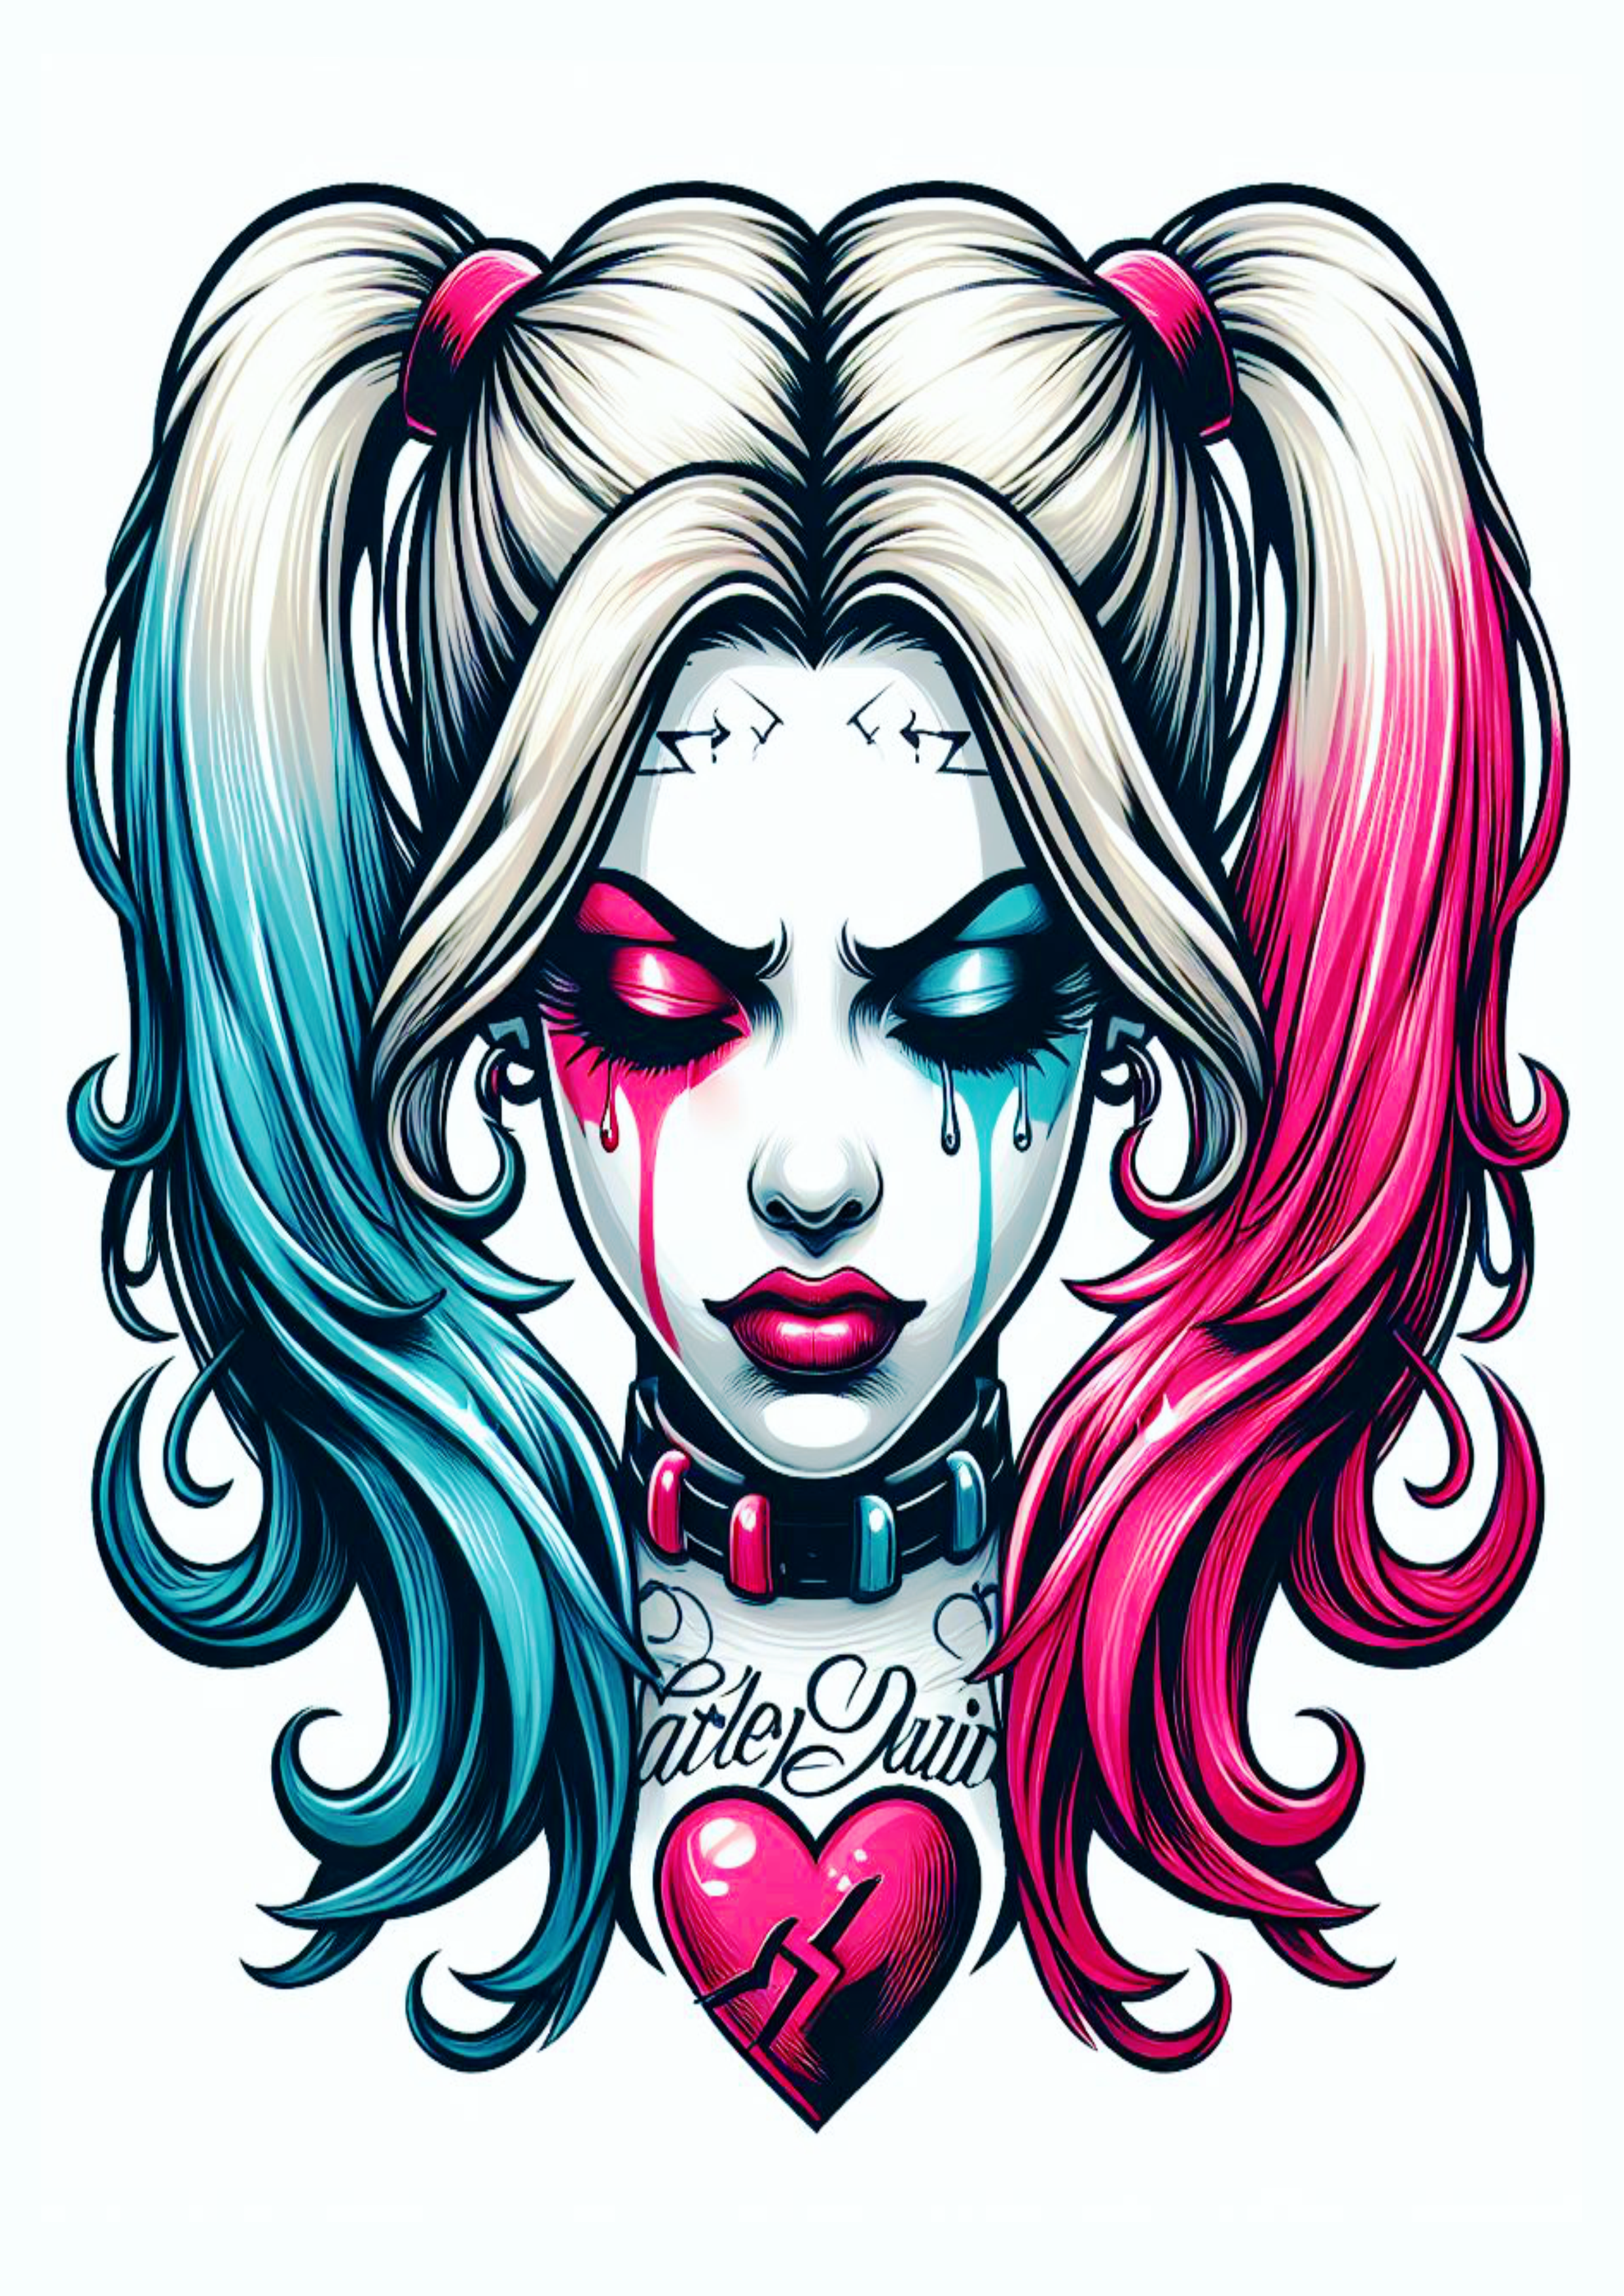 Arlequina chorando desenho colorida para tatuagem Harley Quinn desespero psicopata perturbadora artes visuais coração png